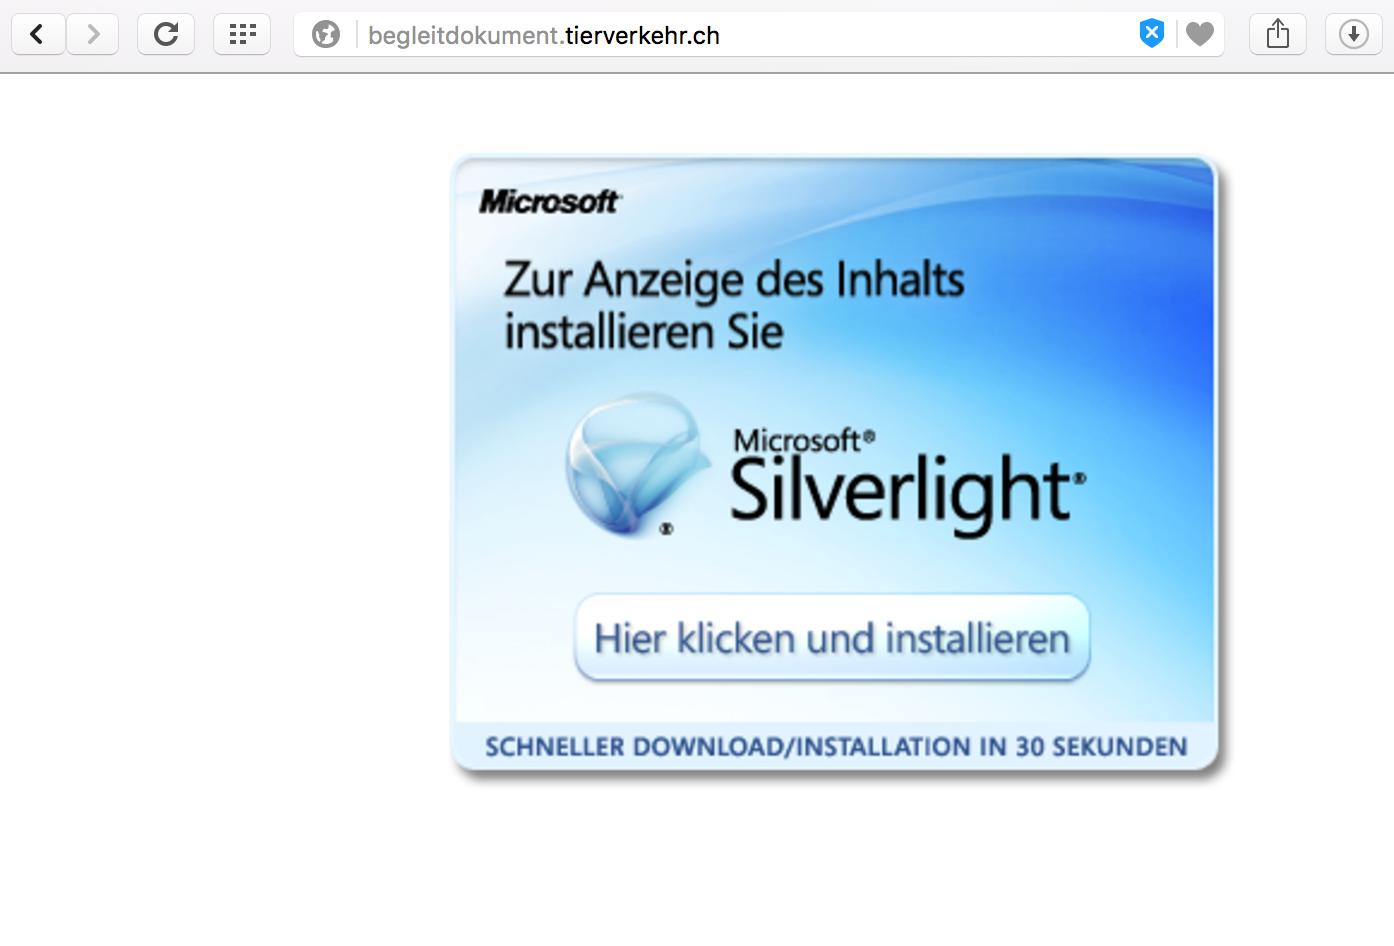 Vergewissern Sie sich, dass Ihr Computer die Mindestanforderungen für Microsoft Silverlight erfüllt, z.B. Betriebssystemversion, Speicherplatz und Prozessorleistung.
Stellen Sie sicher, dass Sie über die neueste Version von Microsoft Silverlight verfügen.